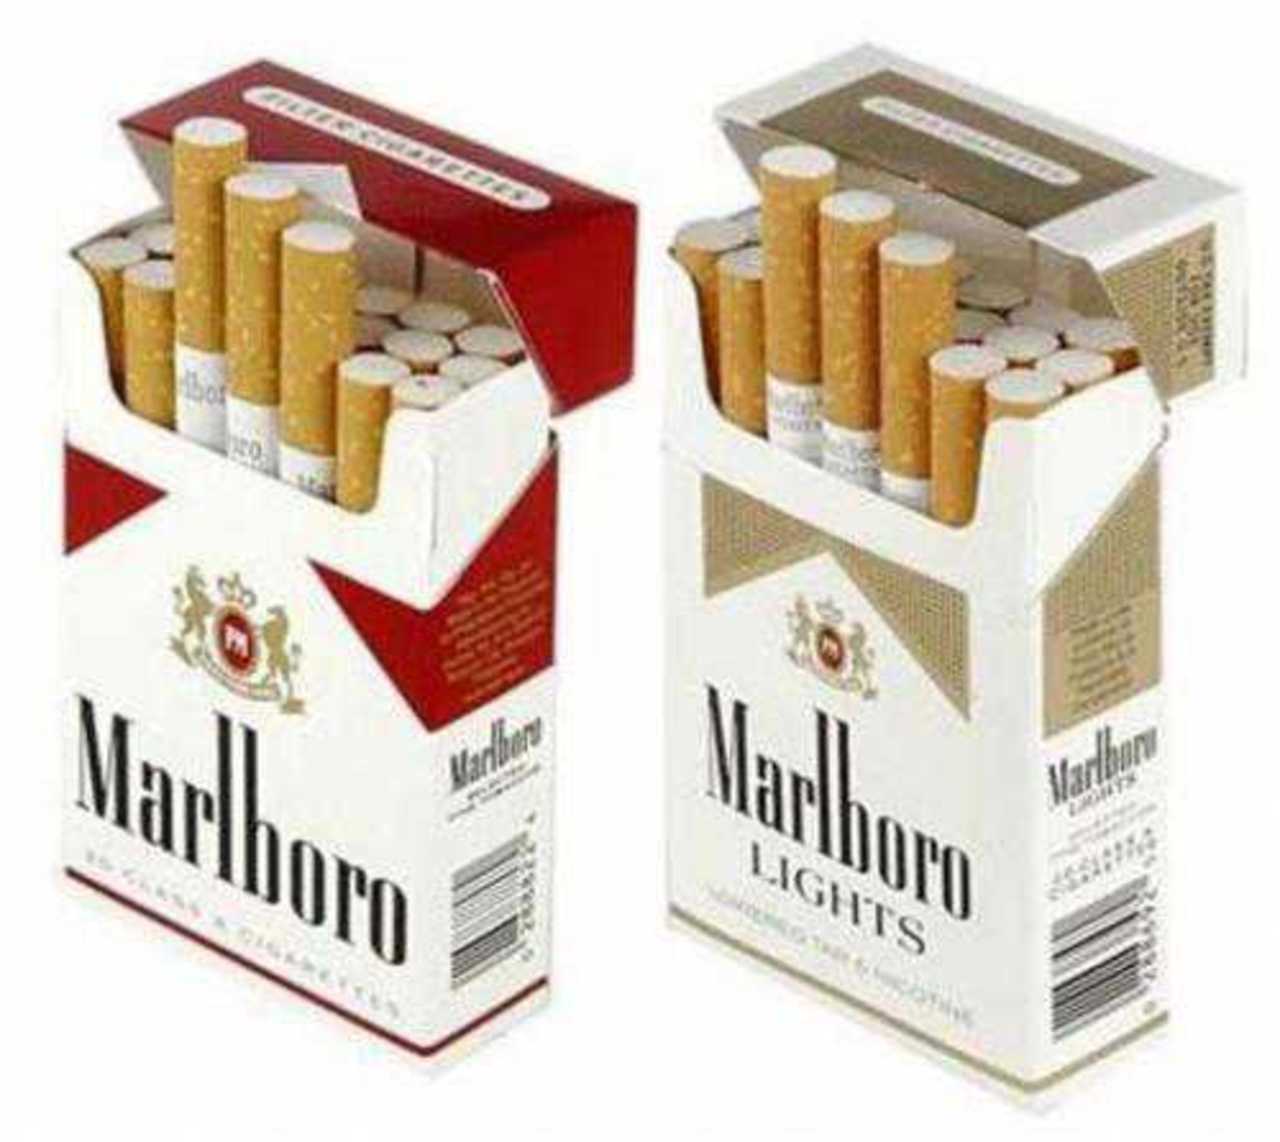 Маркетинг табак